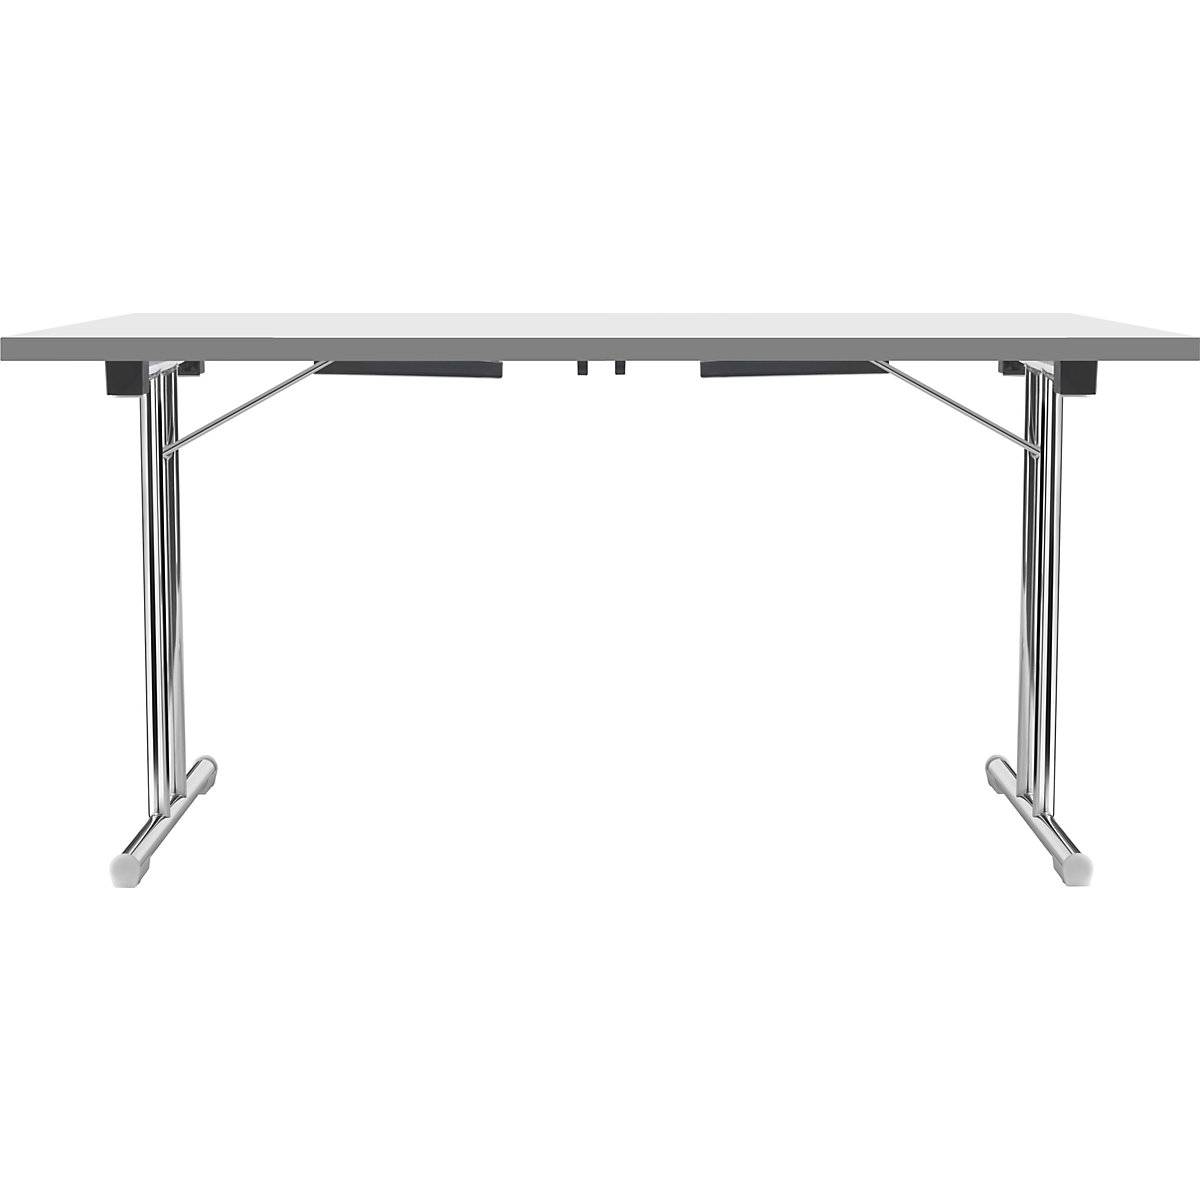 Zložljiva miza z dvojnim podnožjem v obliki črke T, ogrodje iz okrogle jeklene cevi, kromirano, bela/antracitna, ŠxG 1200 x 600 mm-18